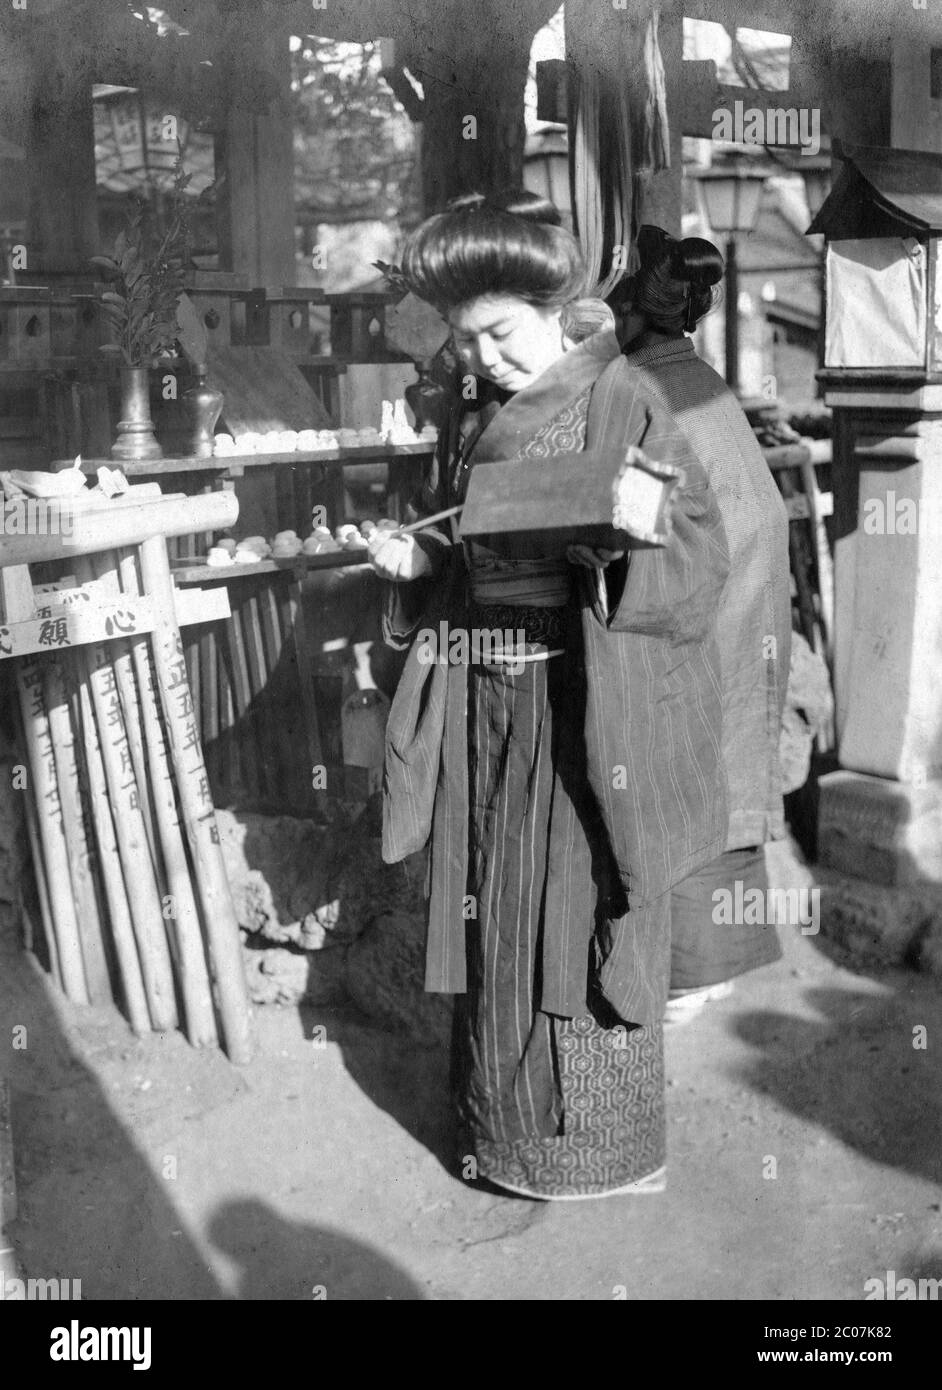 [ 1910s Japón - Mujer japonesa en Shinto Shrine ] — una mujer japonesa está sacando un palo numerado de una caja de madera para contar fortuna en un Shinto Shrine. El número del palo hace referencia a un pedazo de papel numerado, llamado o-mikuji, con descripciones de la fortuna, salud, relaciones románticas y otros aspectos de la vida diaria. En las puertas miniatura torii sagrado el año Taisho 5 (1916) está escrito y el 1 de enero. Así que esta mujer está visitando el santuario durante el hatsumode (初詣), la primera visita Shinto santuario del año Nuevo Japonés. siglo 20 vintage gelatina de plata. Foto de stock